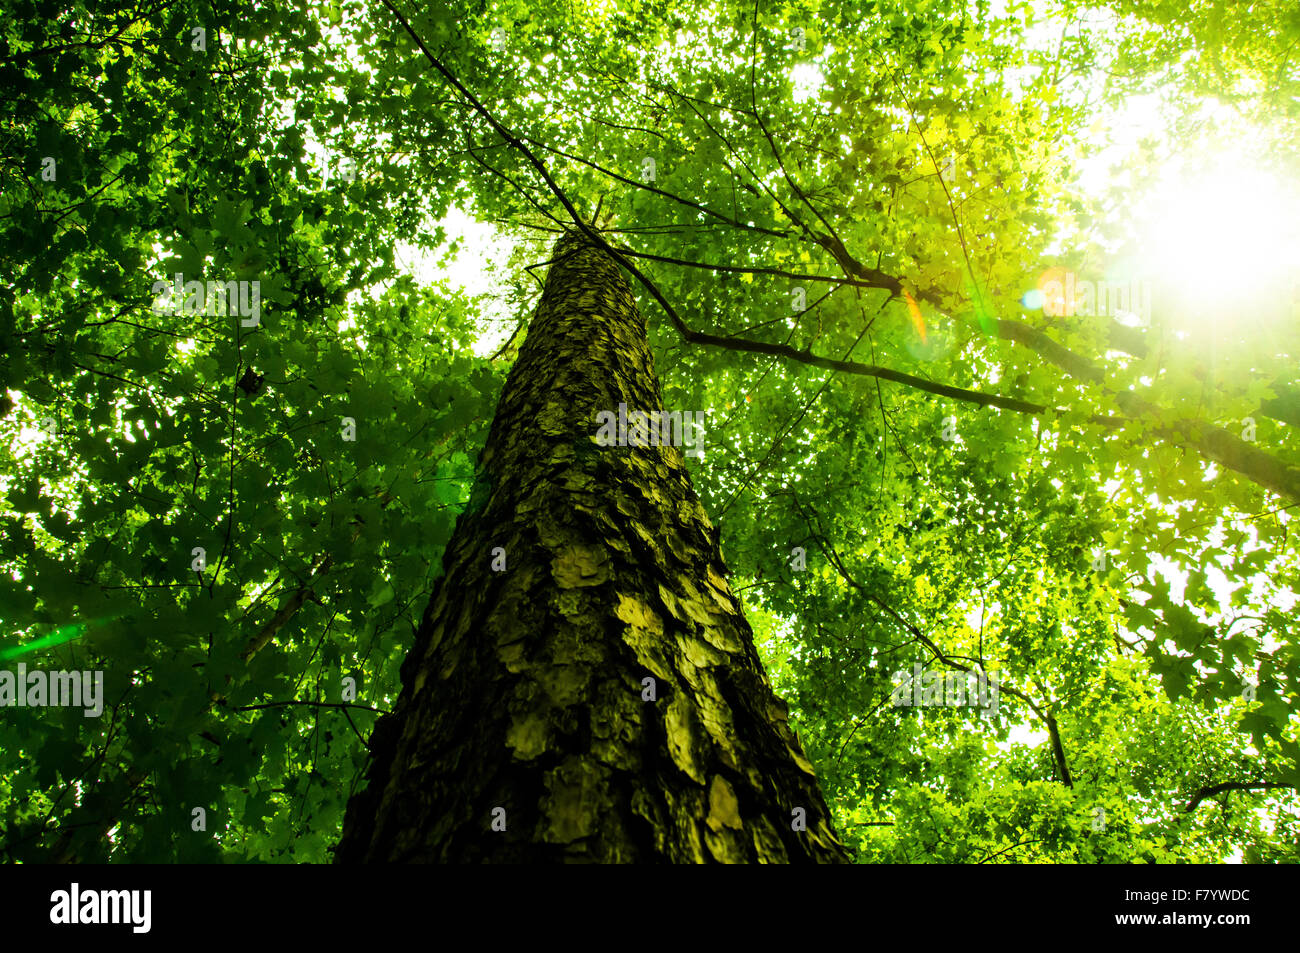 Inquadratura dal basso guardando verso l'alto in corrispondenza di un albero e attraverso le foglie verdi, con un po' di sole flare Foto Stock